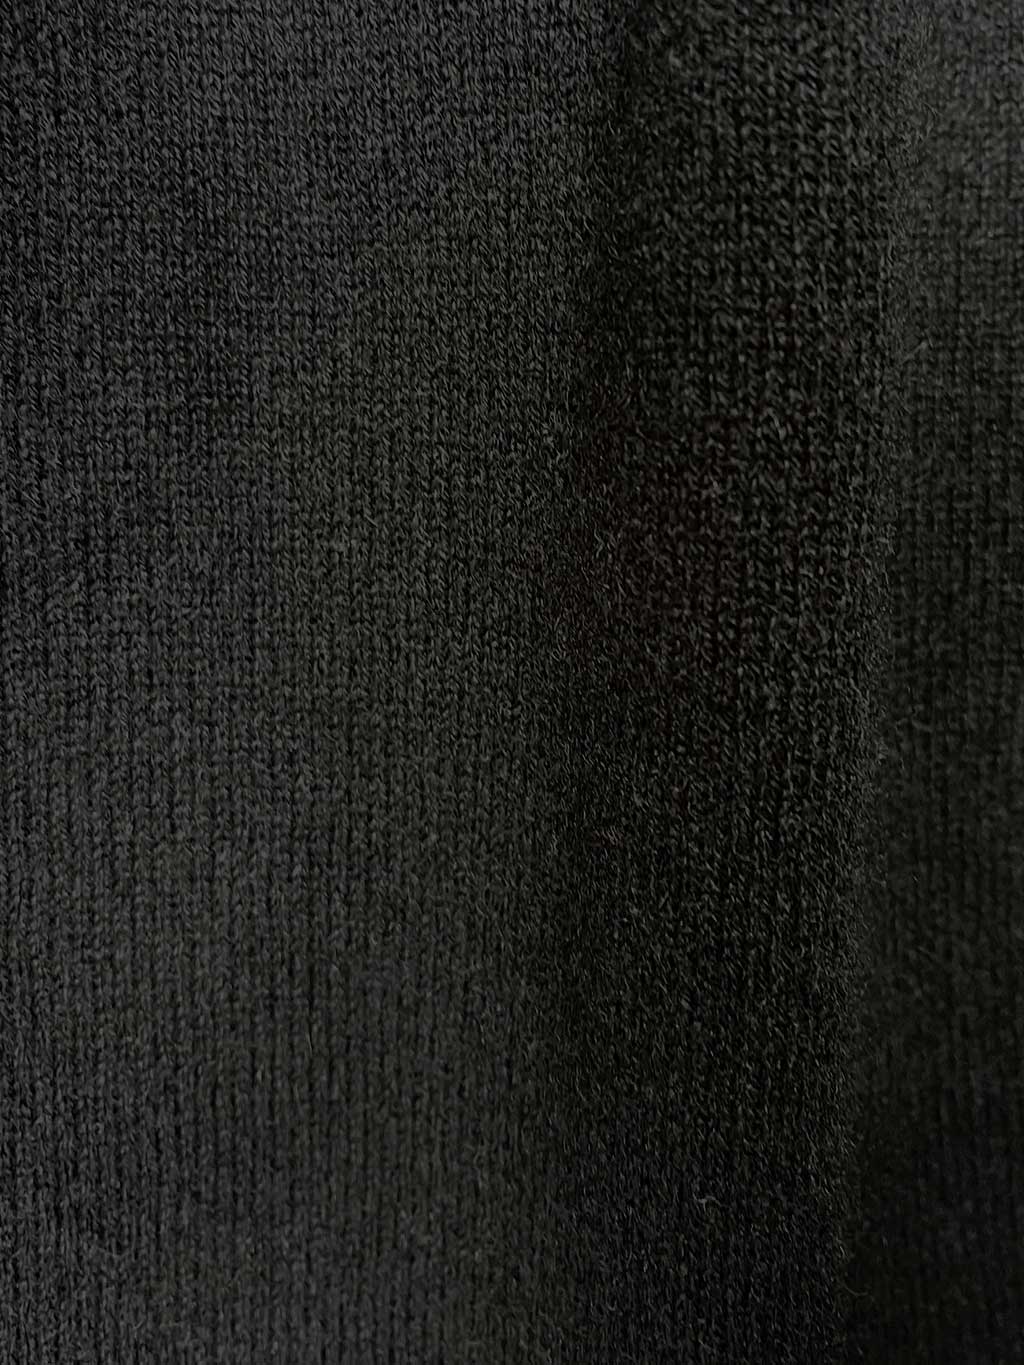 black-pullover-details